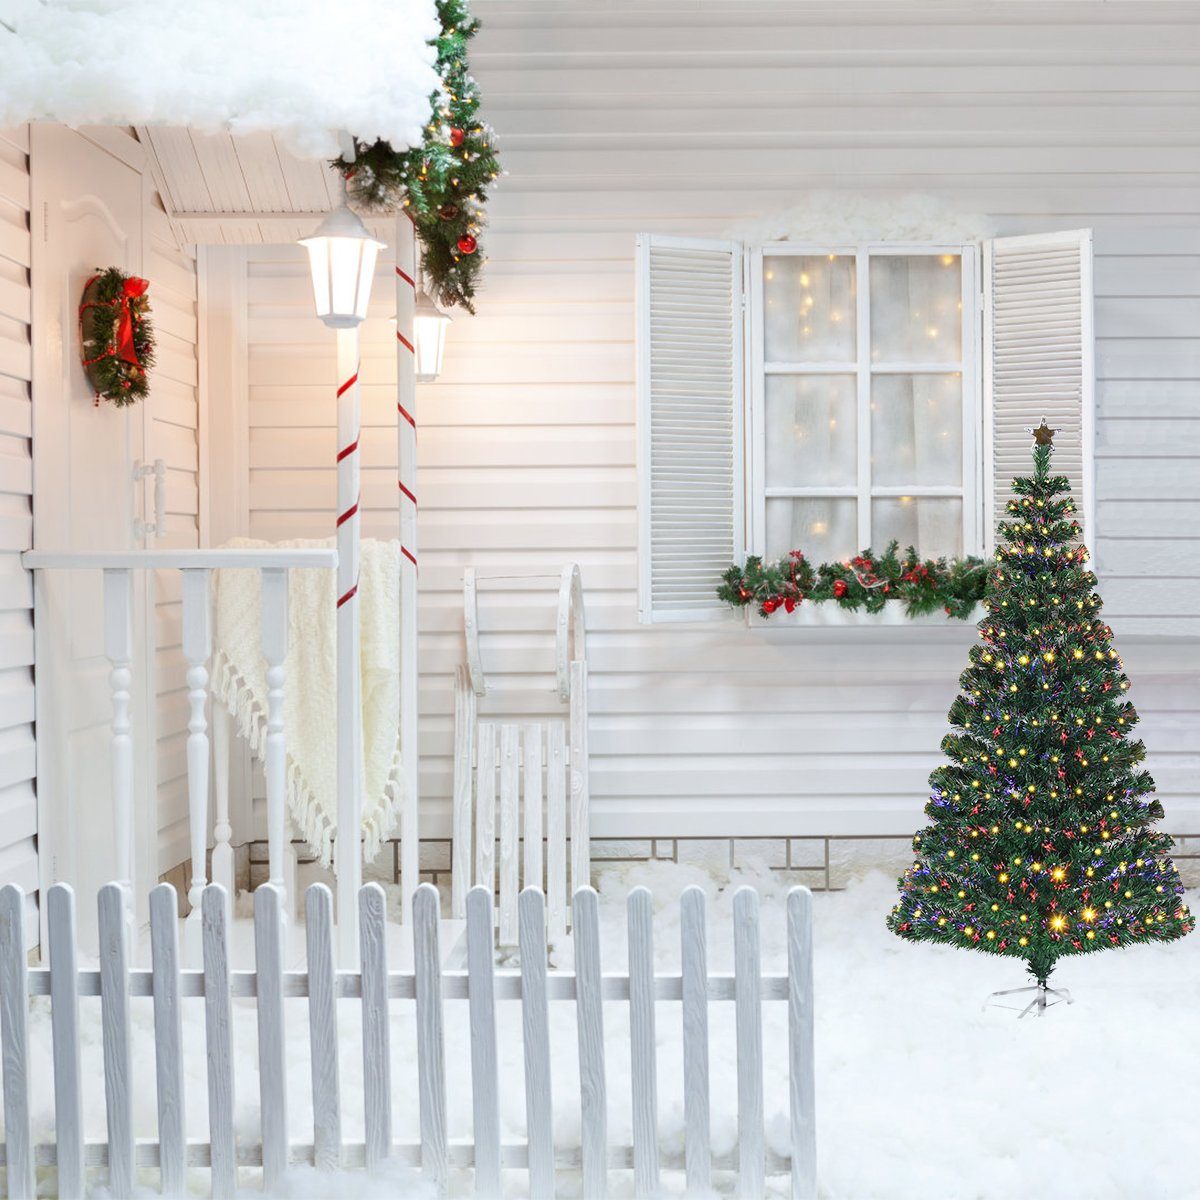 Nadeln 8 Weihnachtsbaum, Blink-Modi PVC Tannenbaum & COSTWAY Künstlicher LED